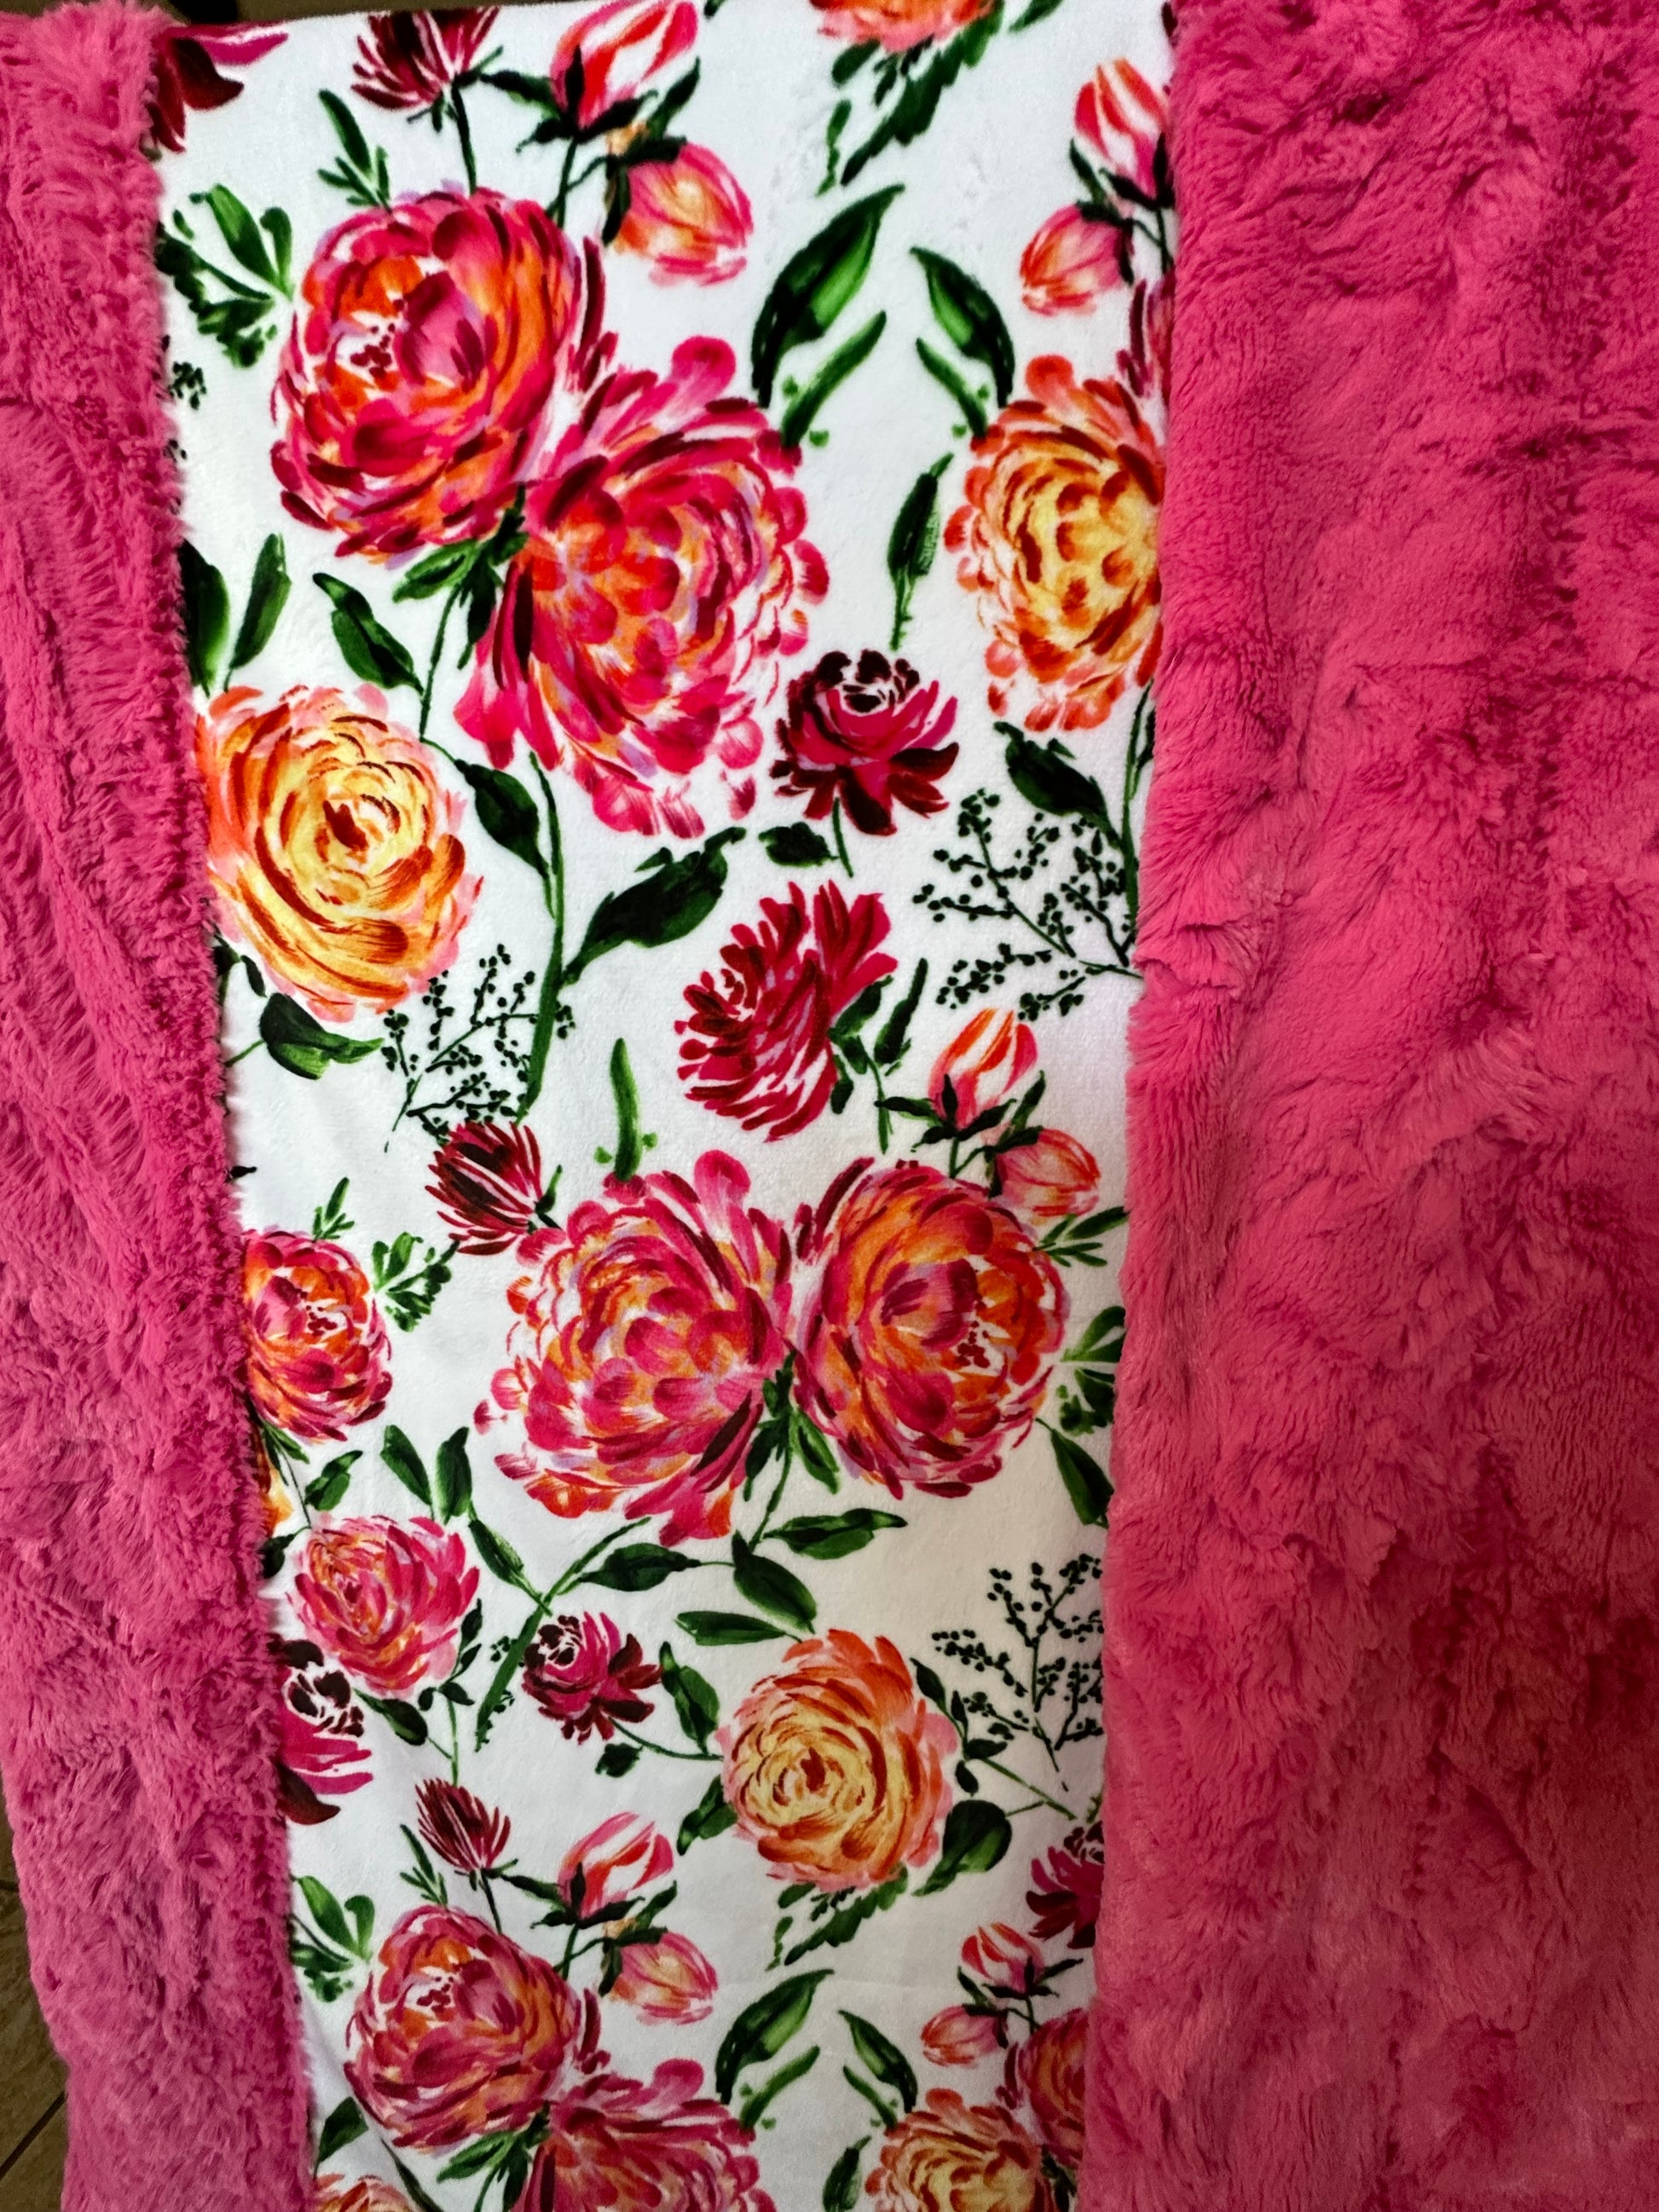 Floral Shop Bloom on Carnation Hide Large Adult Blanket - Chic Floral Elegance - 53x80